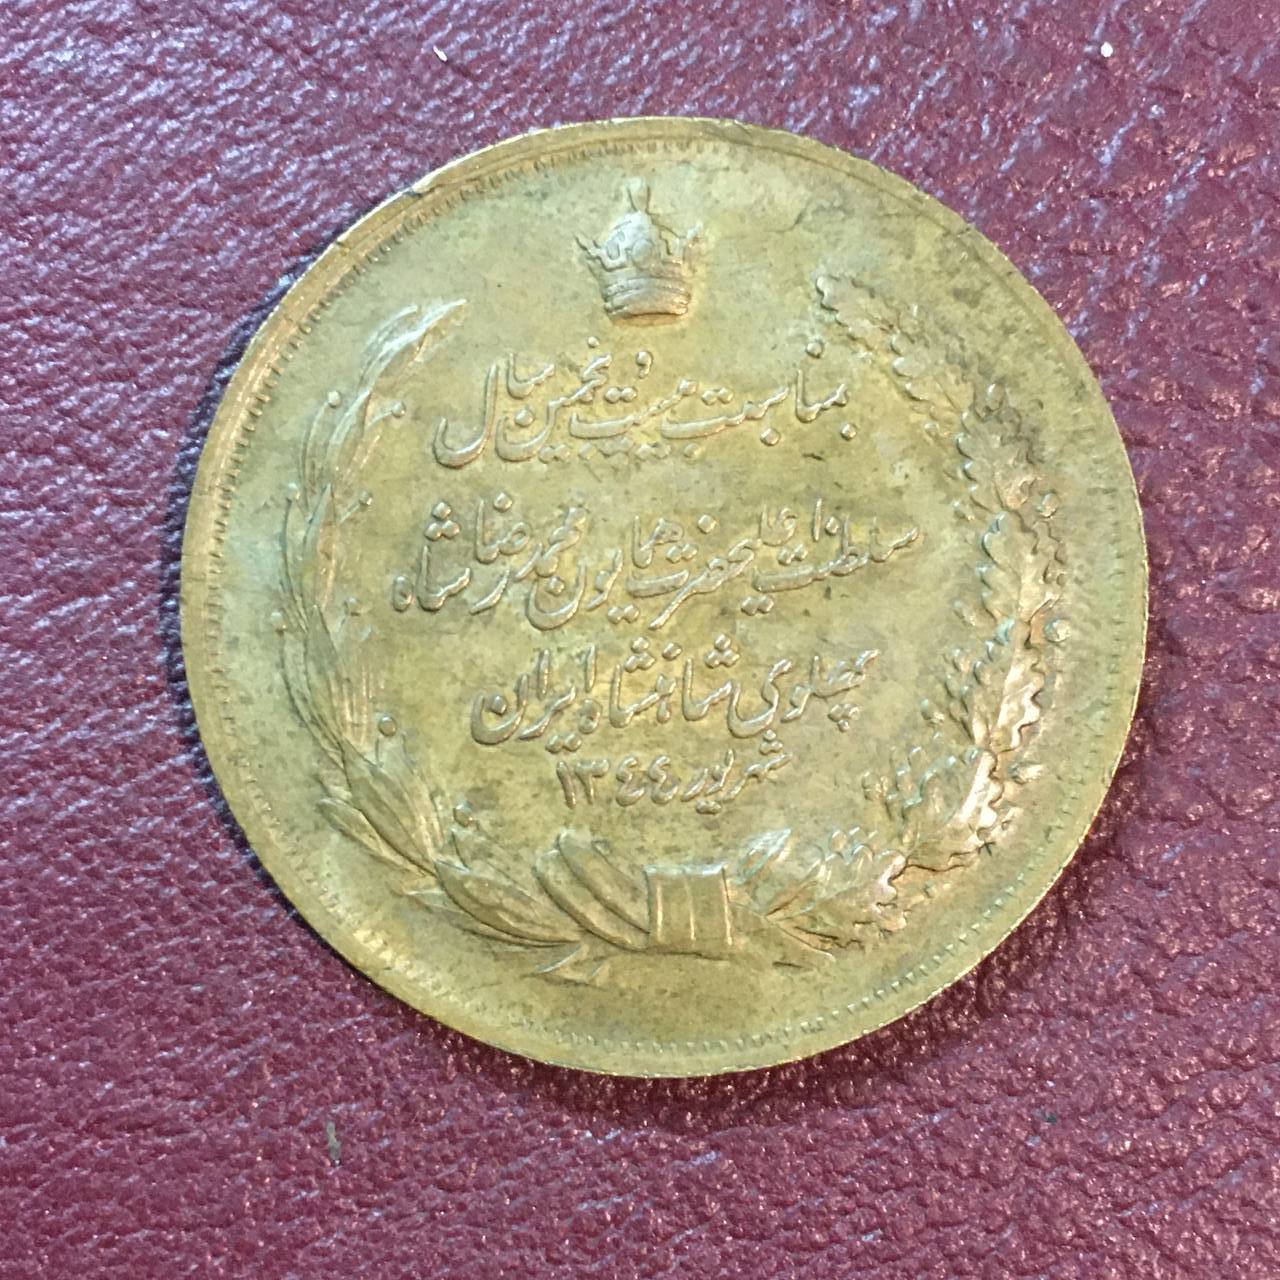 مدال برنزی یادبود بیست و پنجمین سال پادشاهی پهلوی شهریور ١٣۴۴ خورشیدی زیبا و ارزشمند